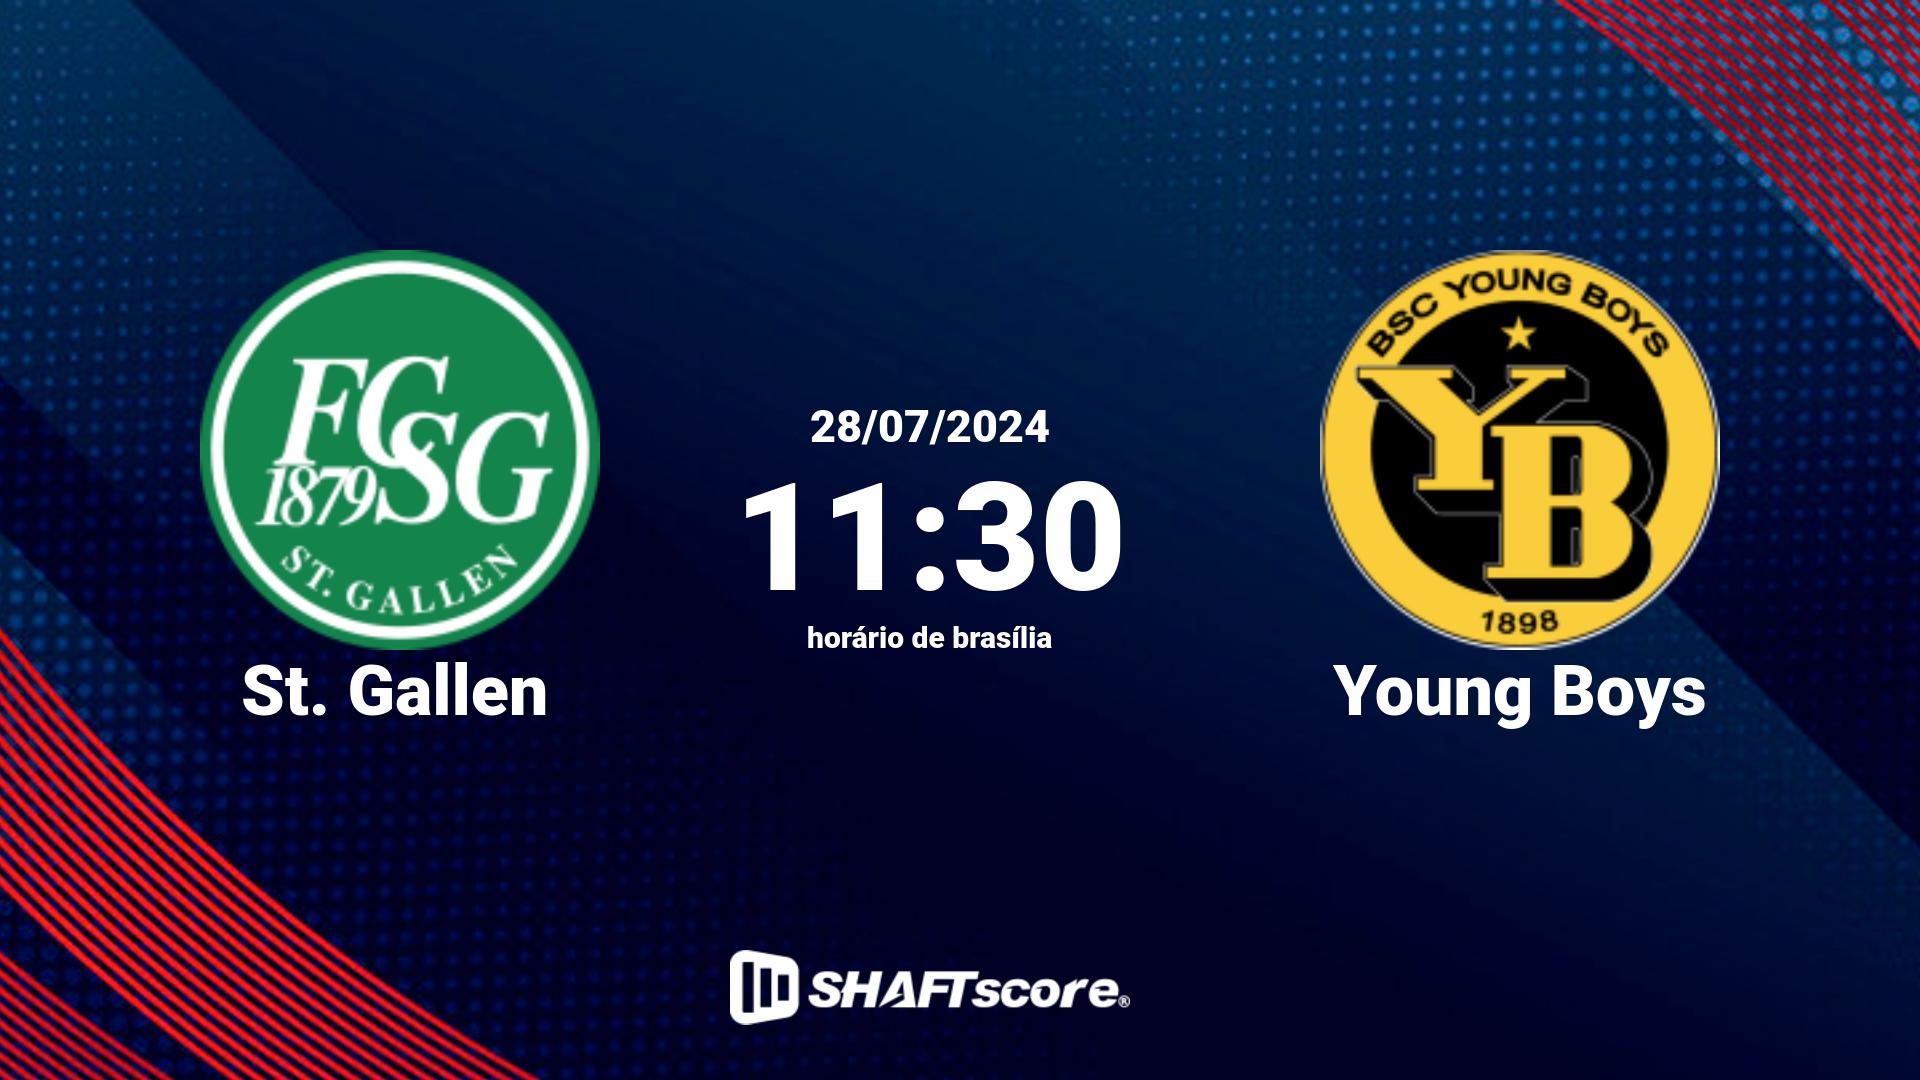 Estatísticas do jogo St. Gallen vs Young Boys 28.07 11:30